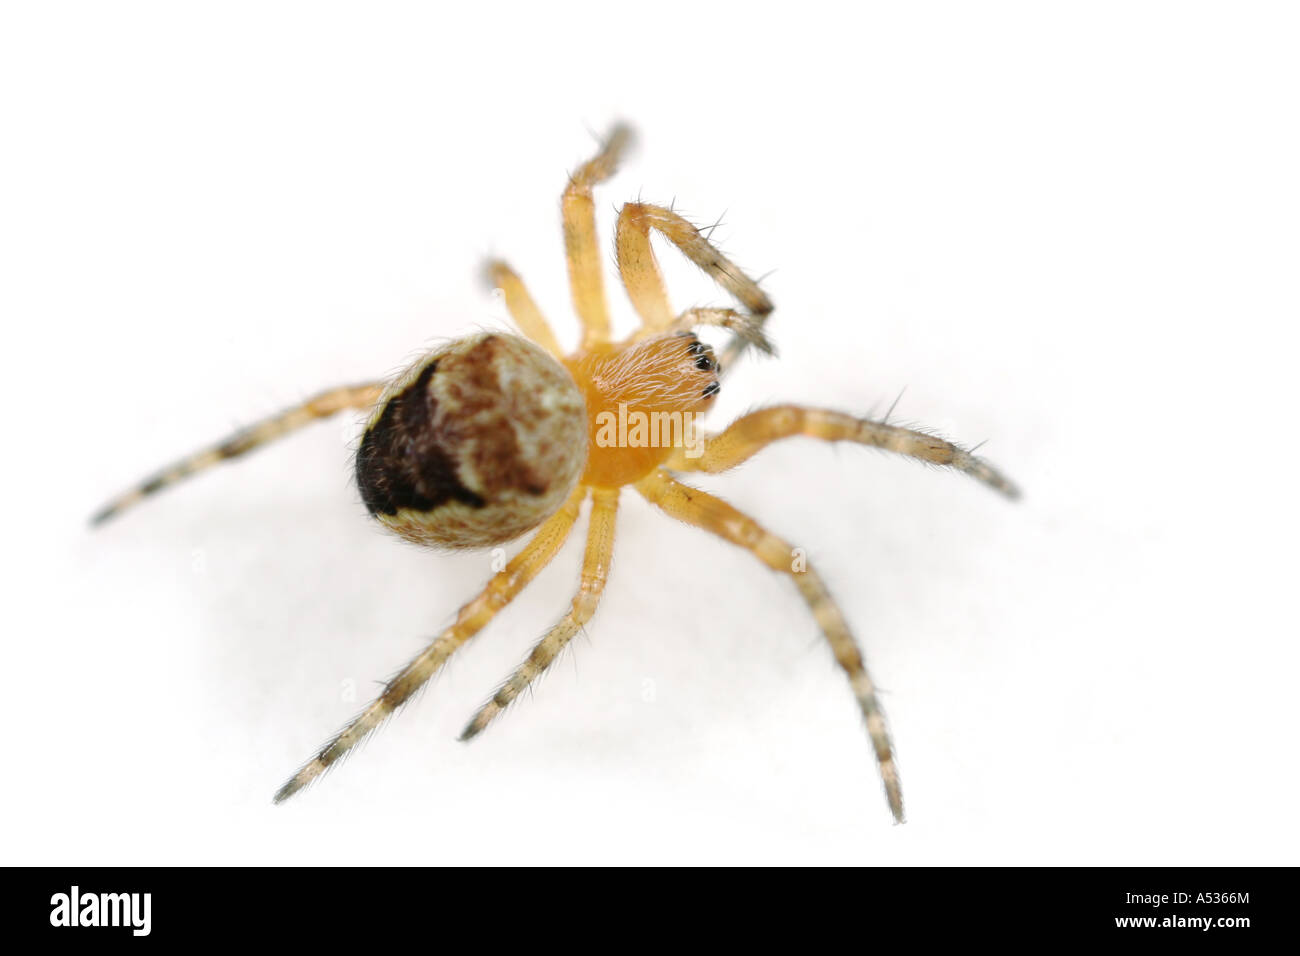 Ein kleiner Spiderling. Wahrscheinlich eine Kreuzspinne oder Kreuzspinne Araneus Diadematus. Stockfoto